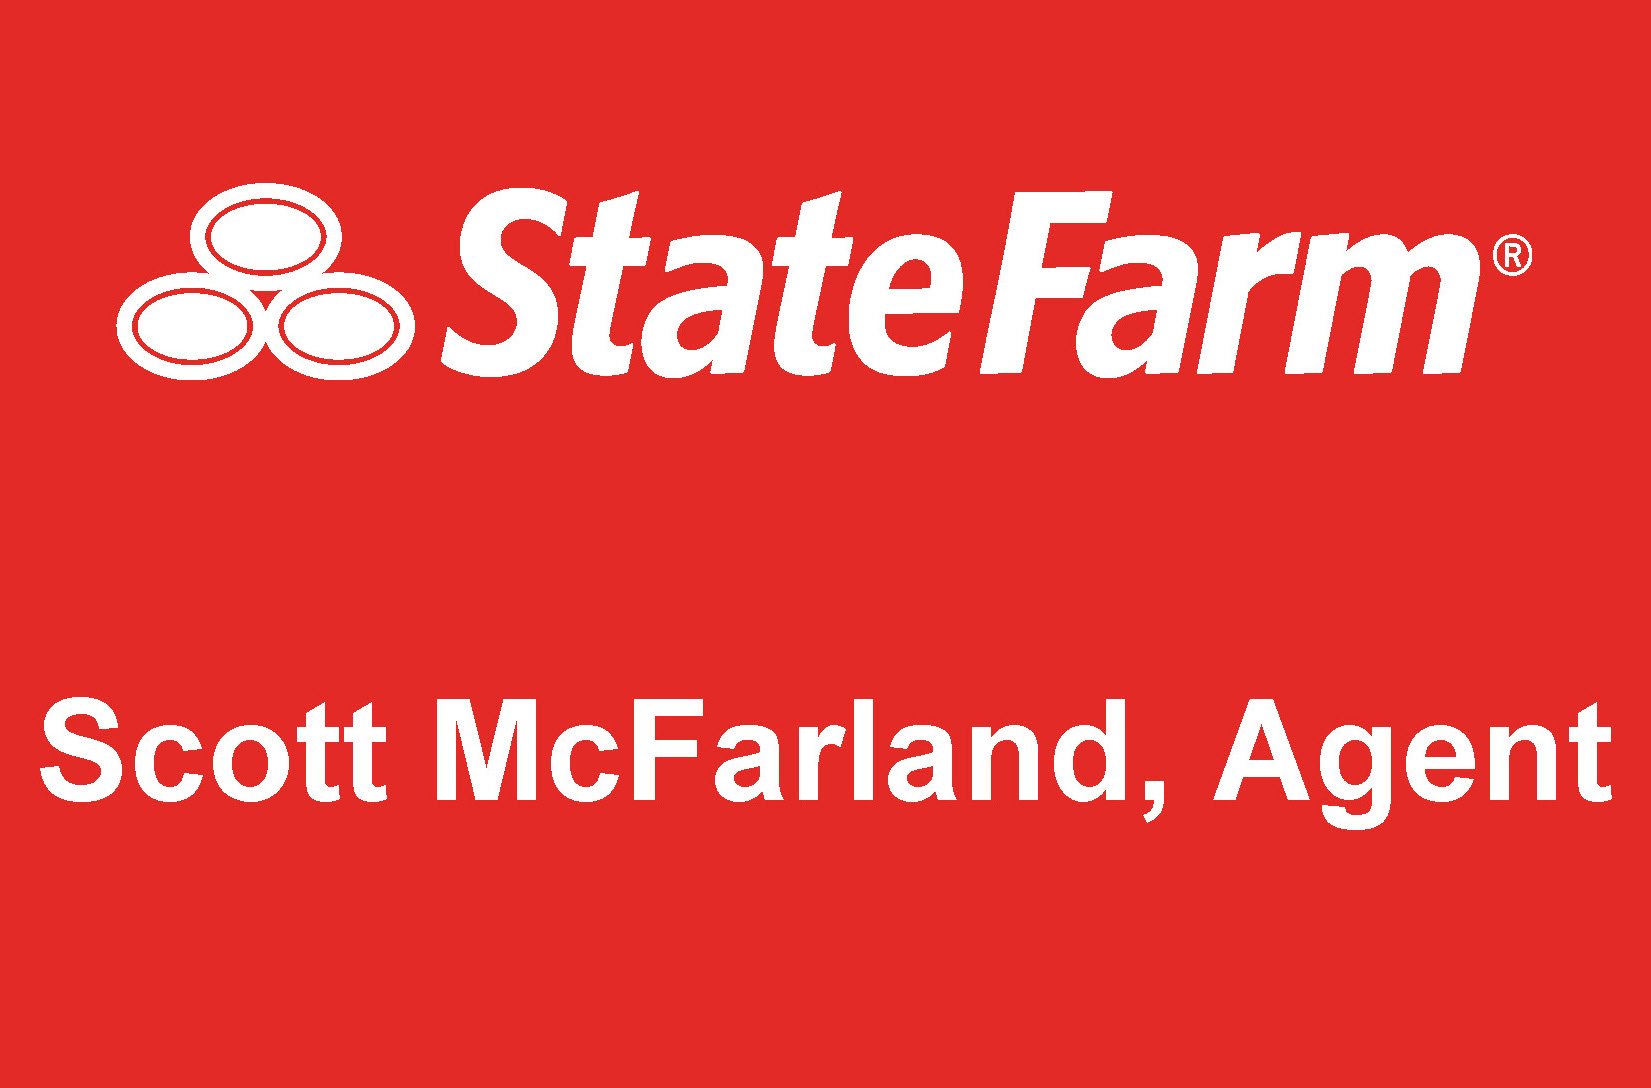 250 Scott McFarland State Farm.jpg